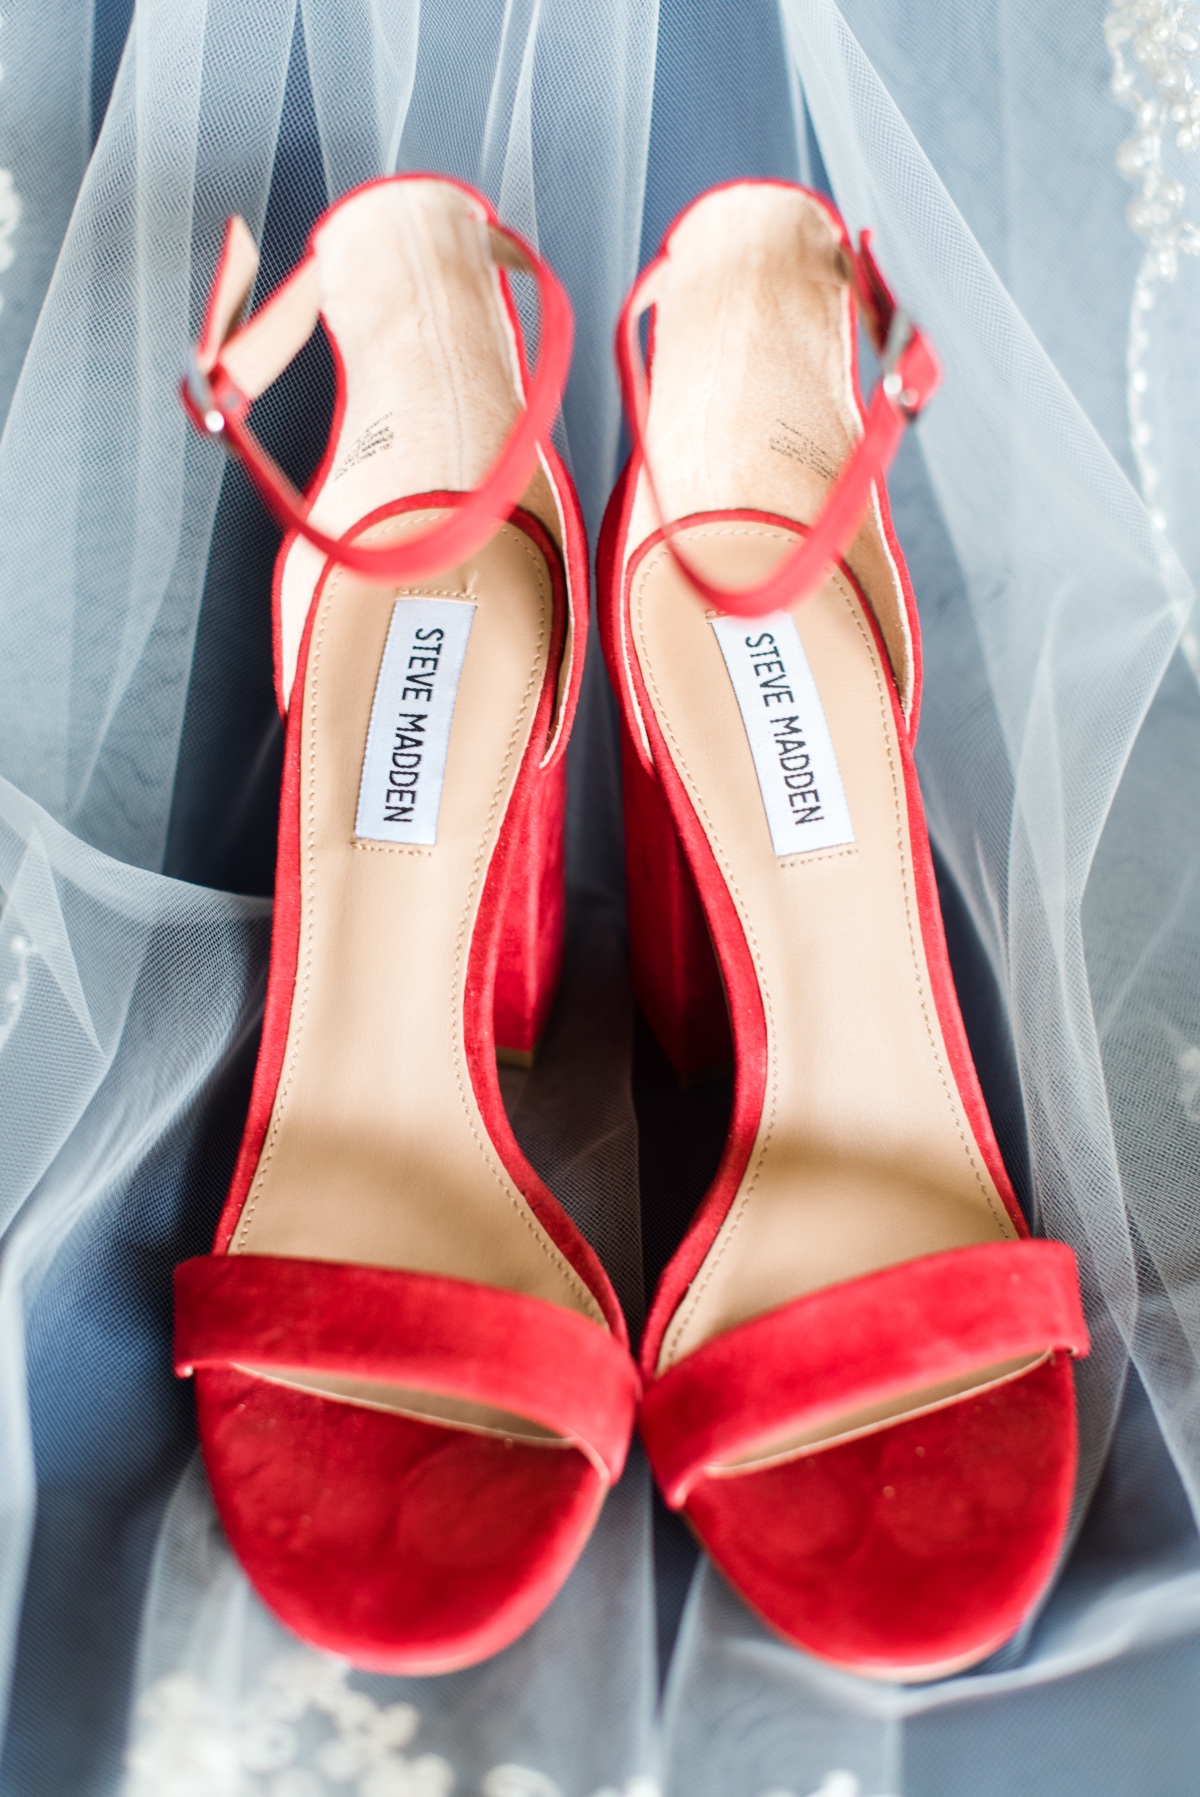 Red wedding heels